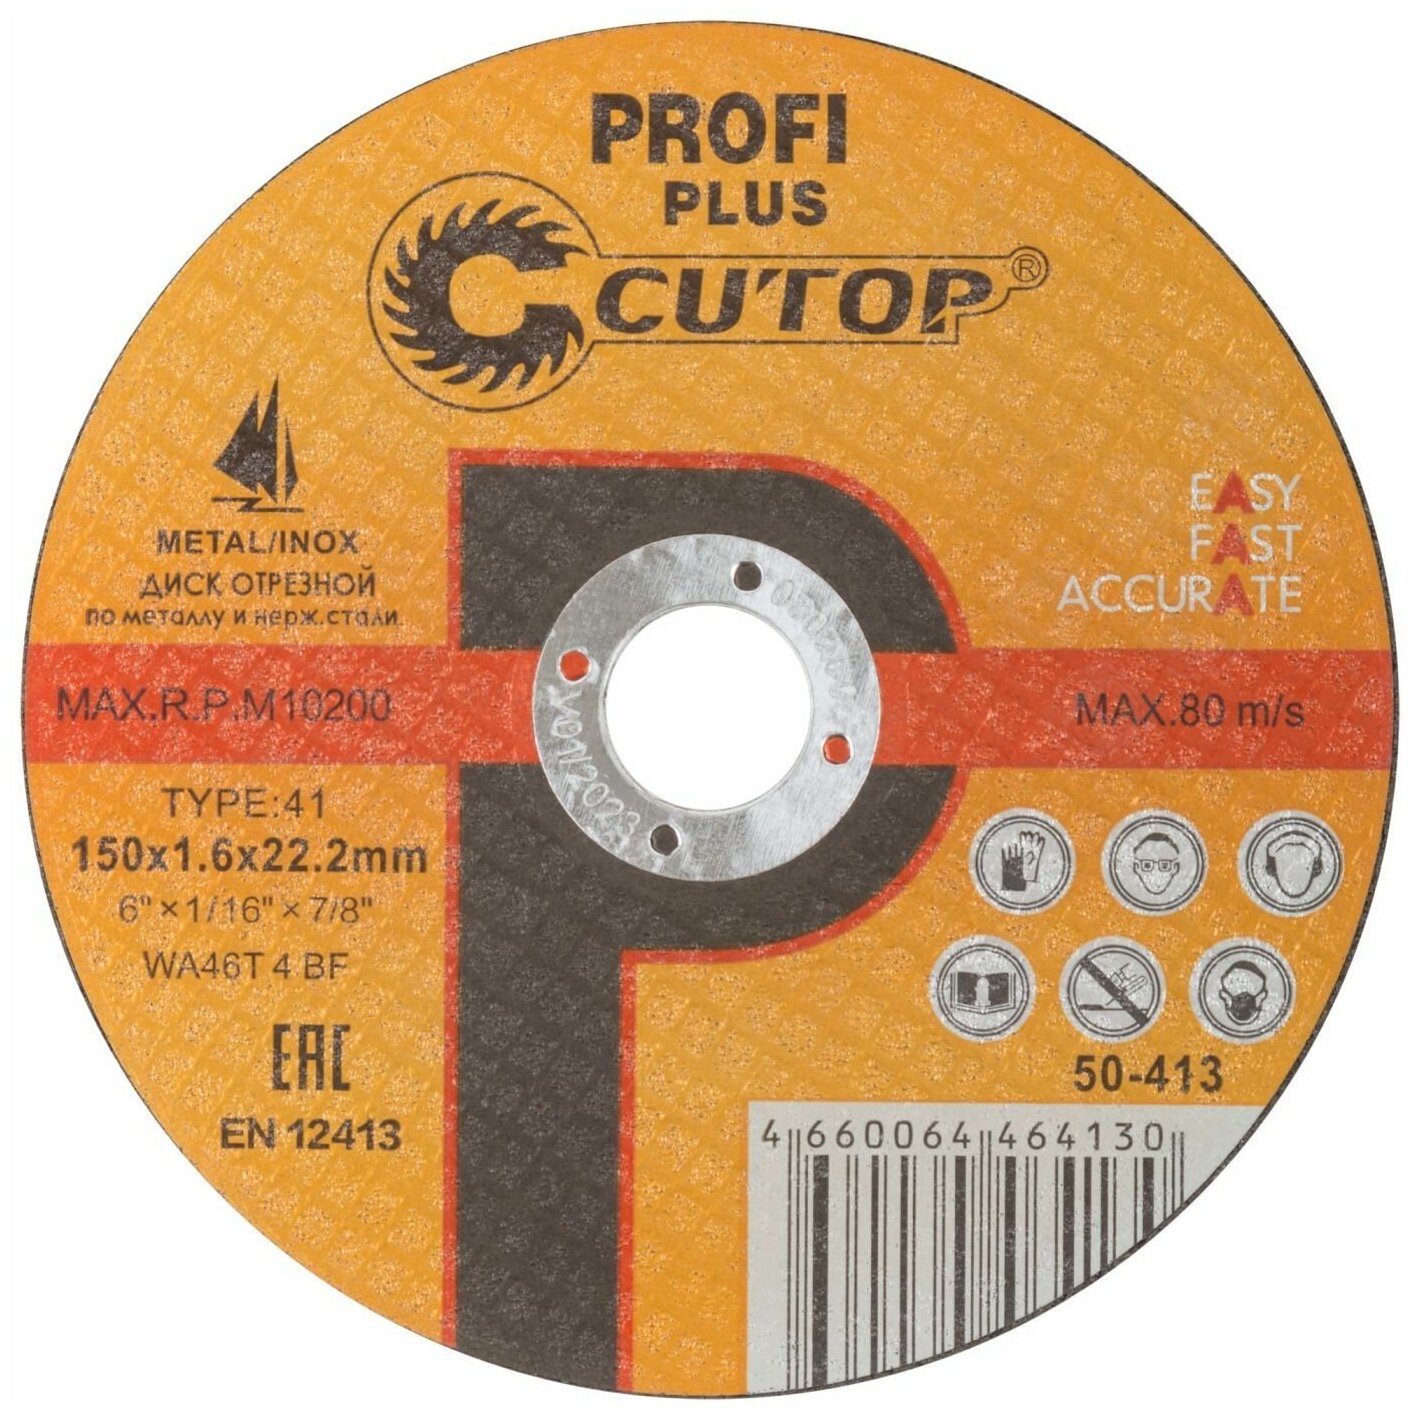 Профессиональный диск отрезной по металлу и нержавеющей стали Т41-150 х 16 х 222 мм Cutop Profi Plus